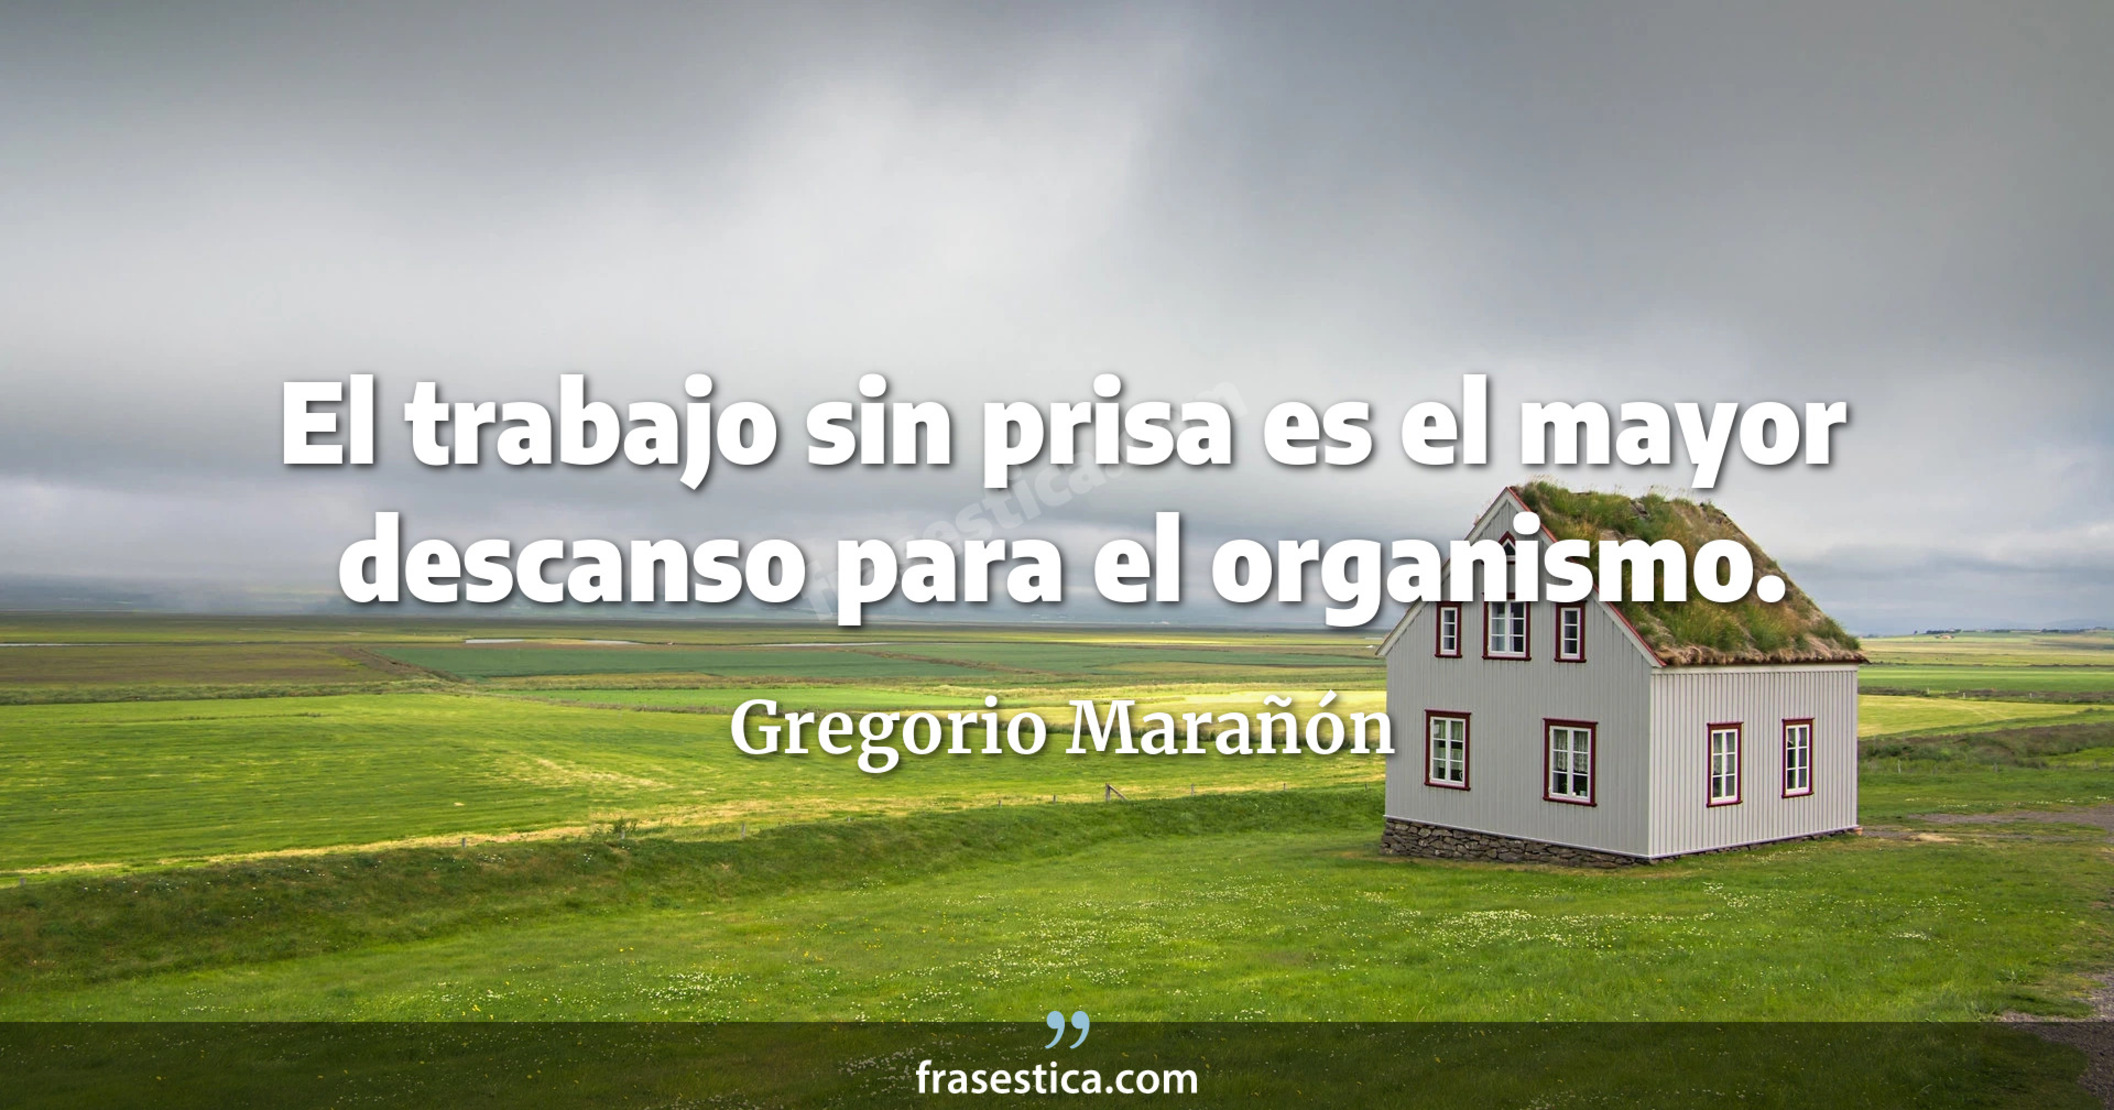 El trabajo sin prisa es el mayor descanso para el organismo. - Gregorio Marañón